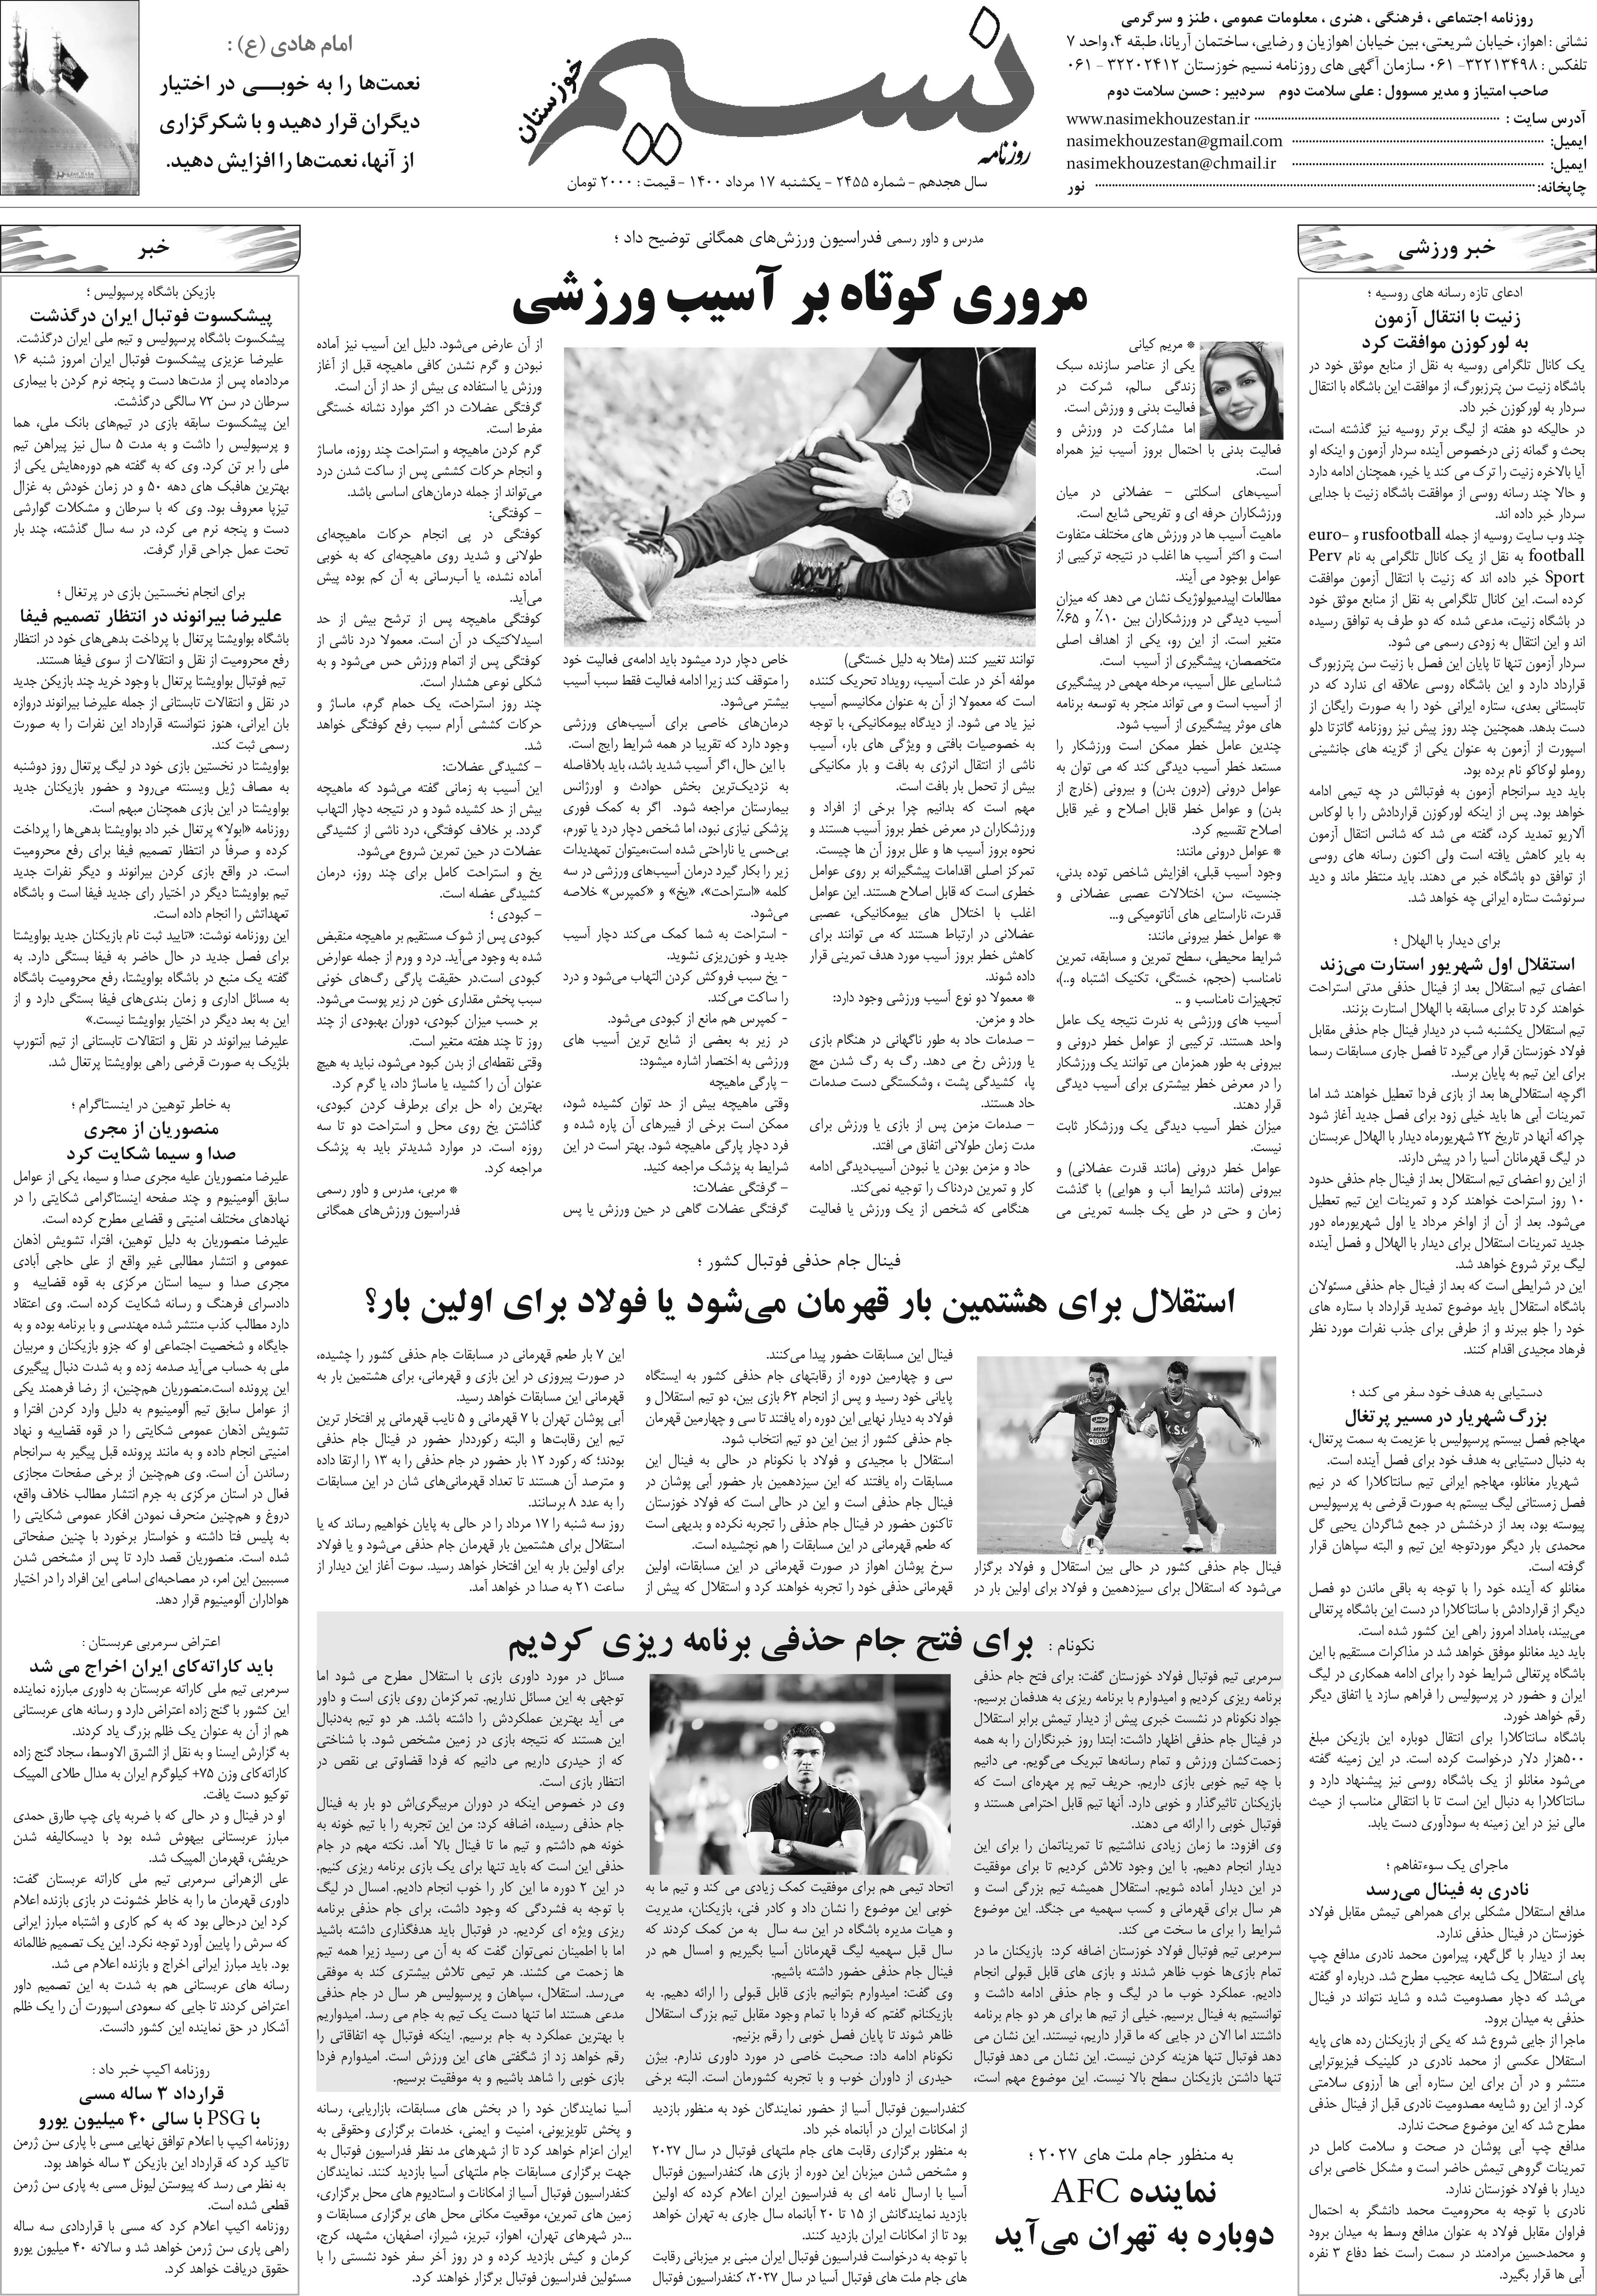 صفحه آخر روزنامه نسیم شماره 2455